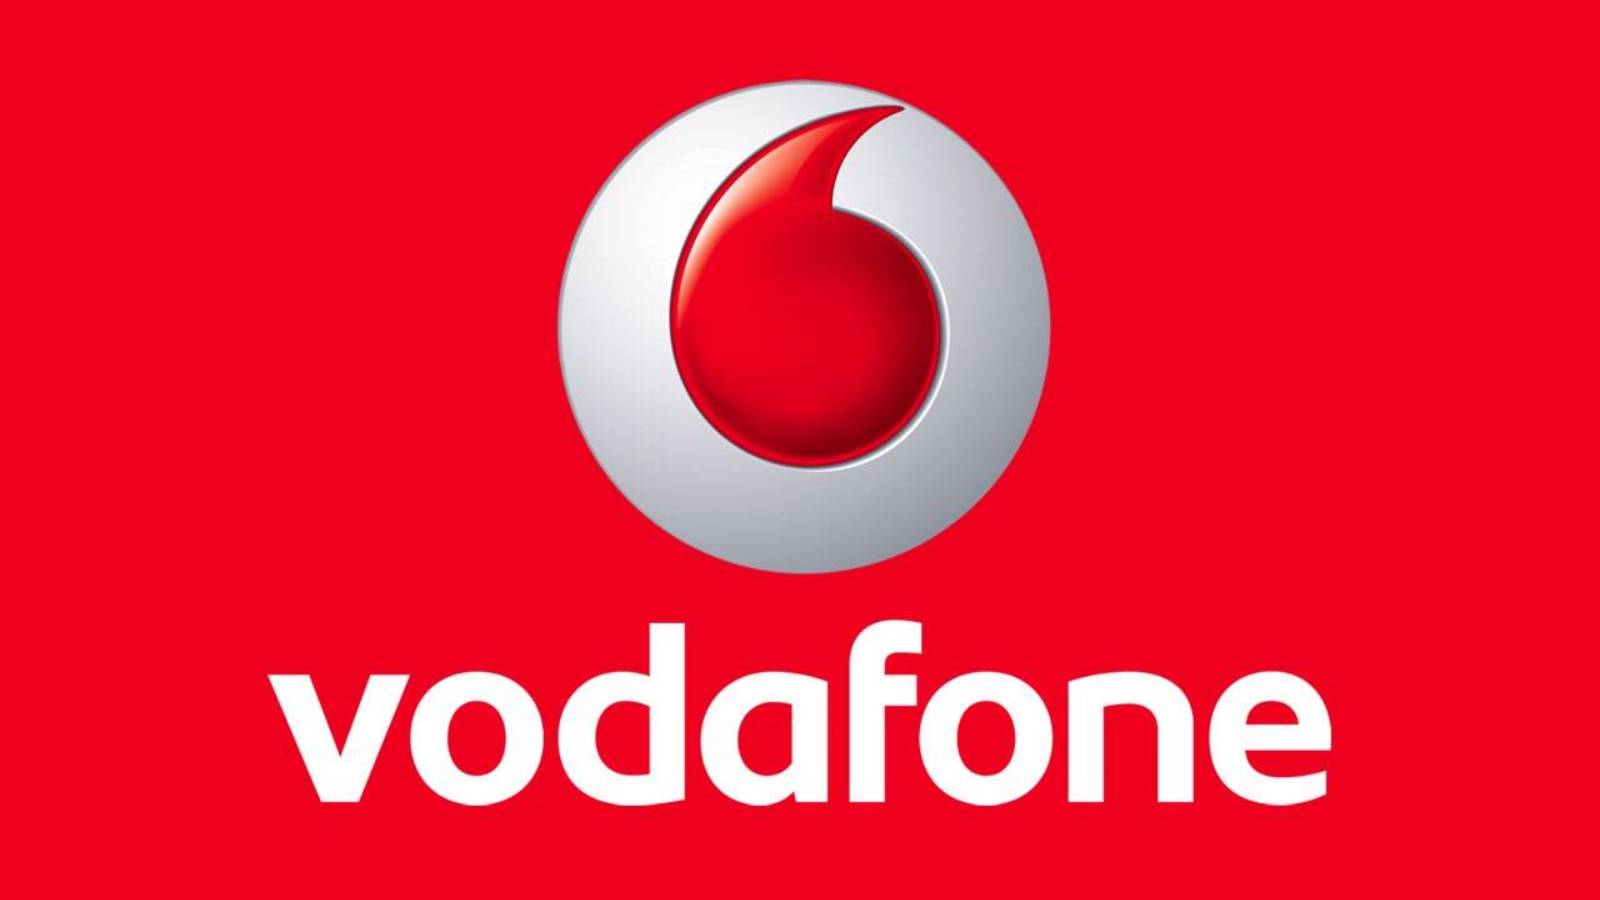 Vodafone craciun gratuit